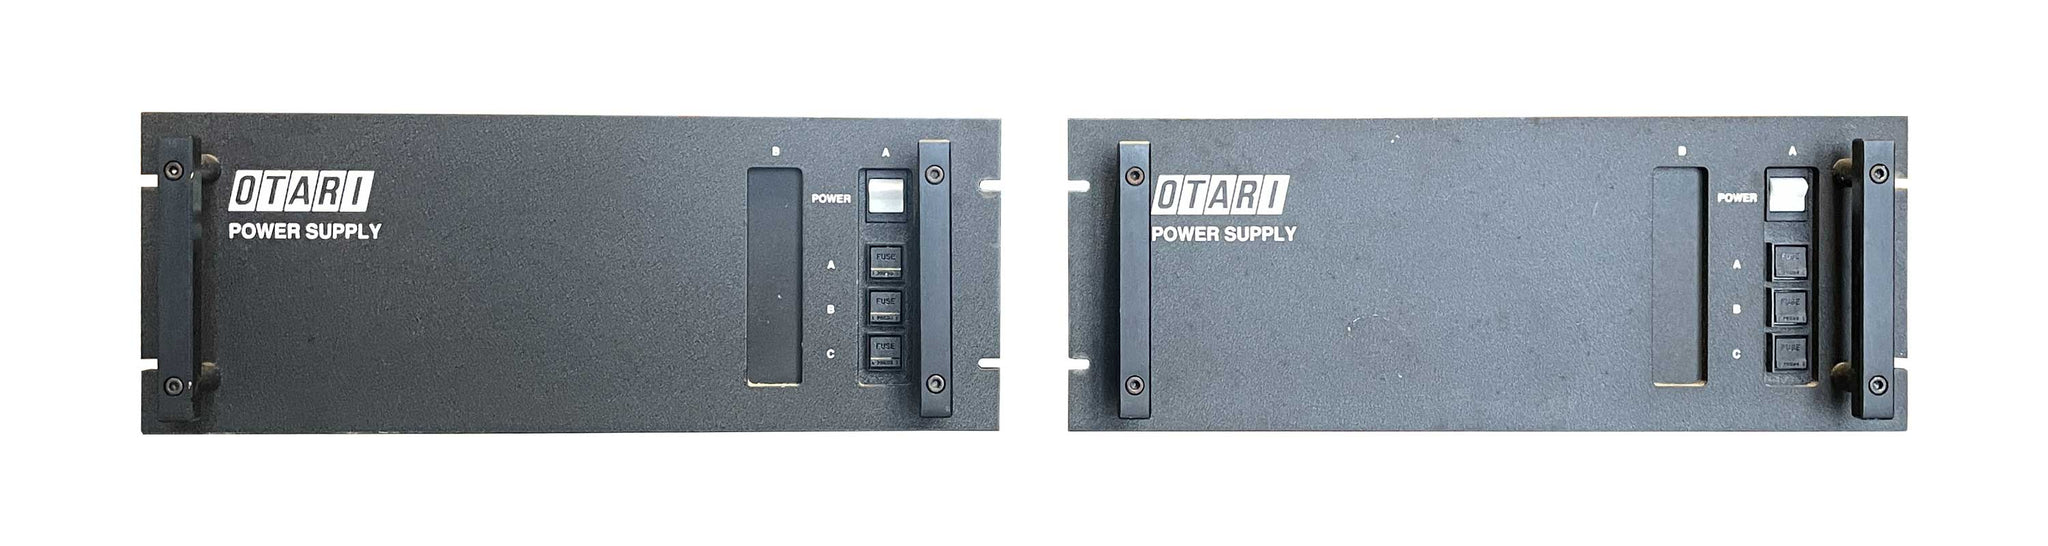 Otari Concept 1 Console PSU Front